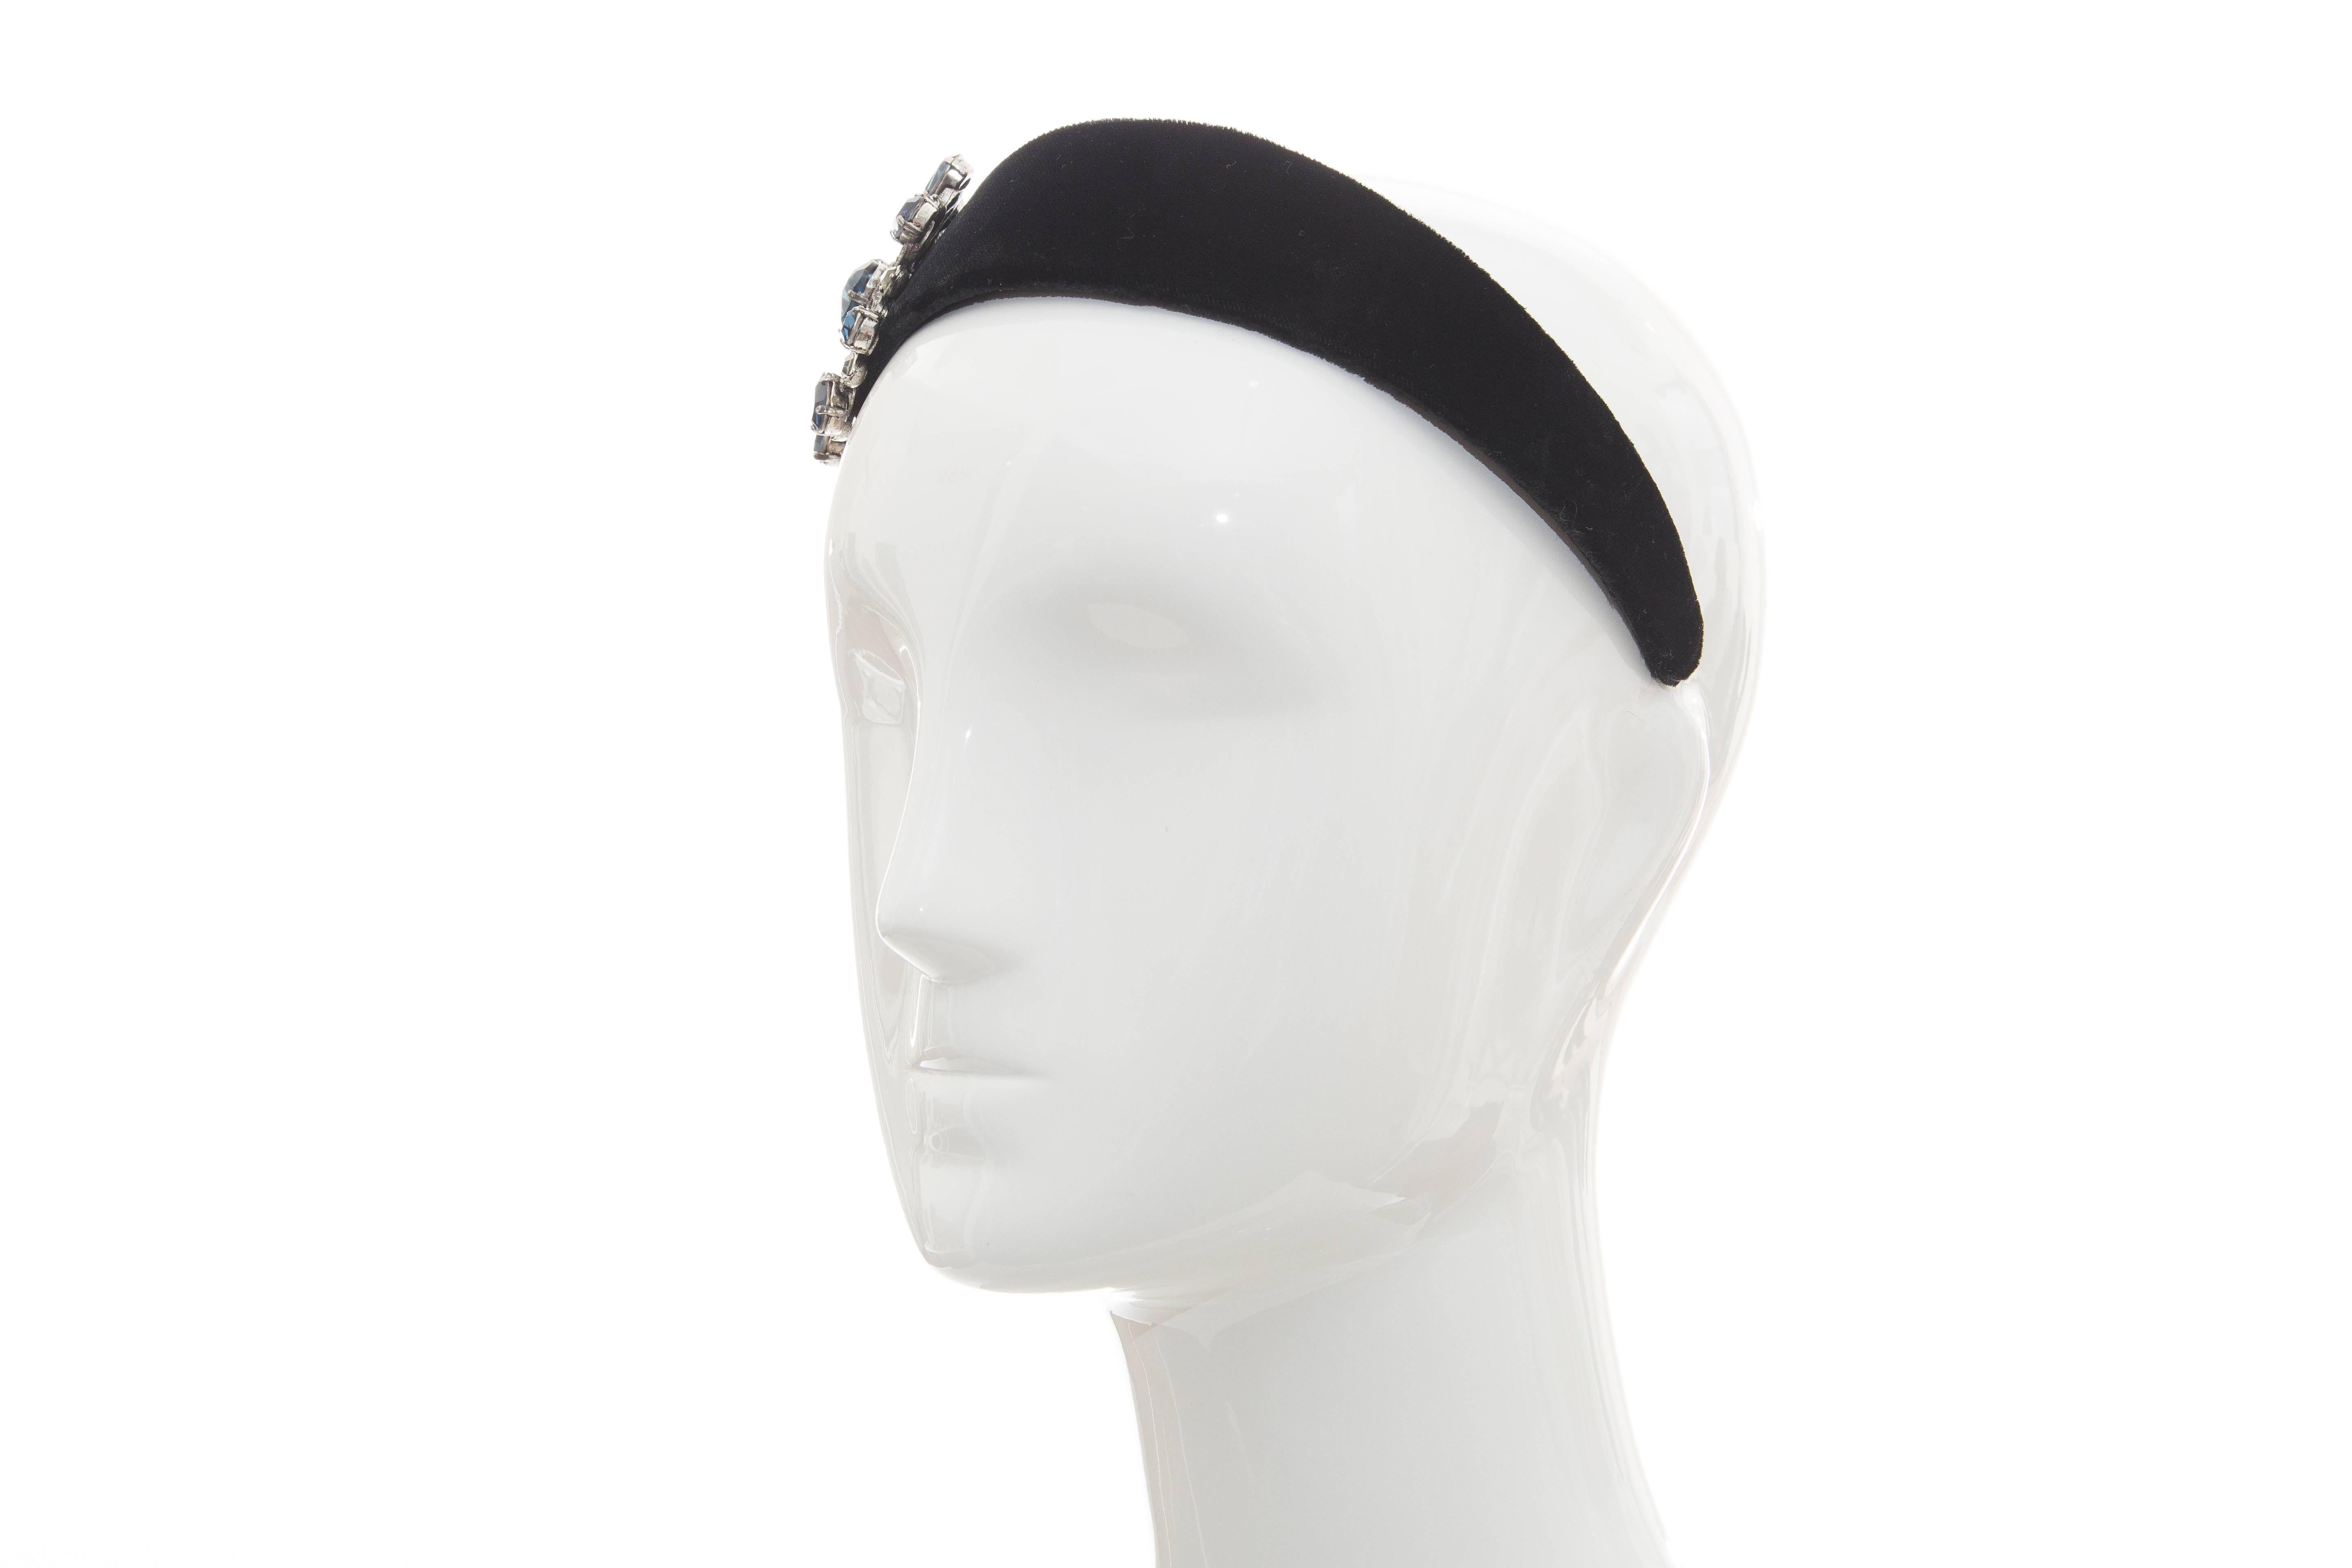  Alber Elbaz für Lanvin Laufsteg-Kopfband aus schwarzem Samt mit Kristall, Herbst 2005 Damen